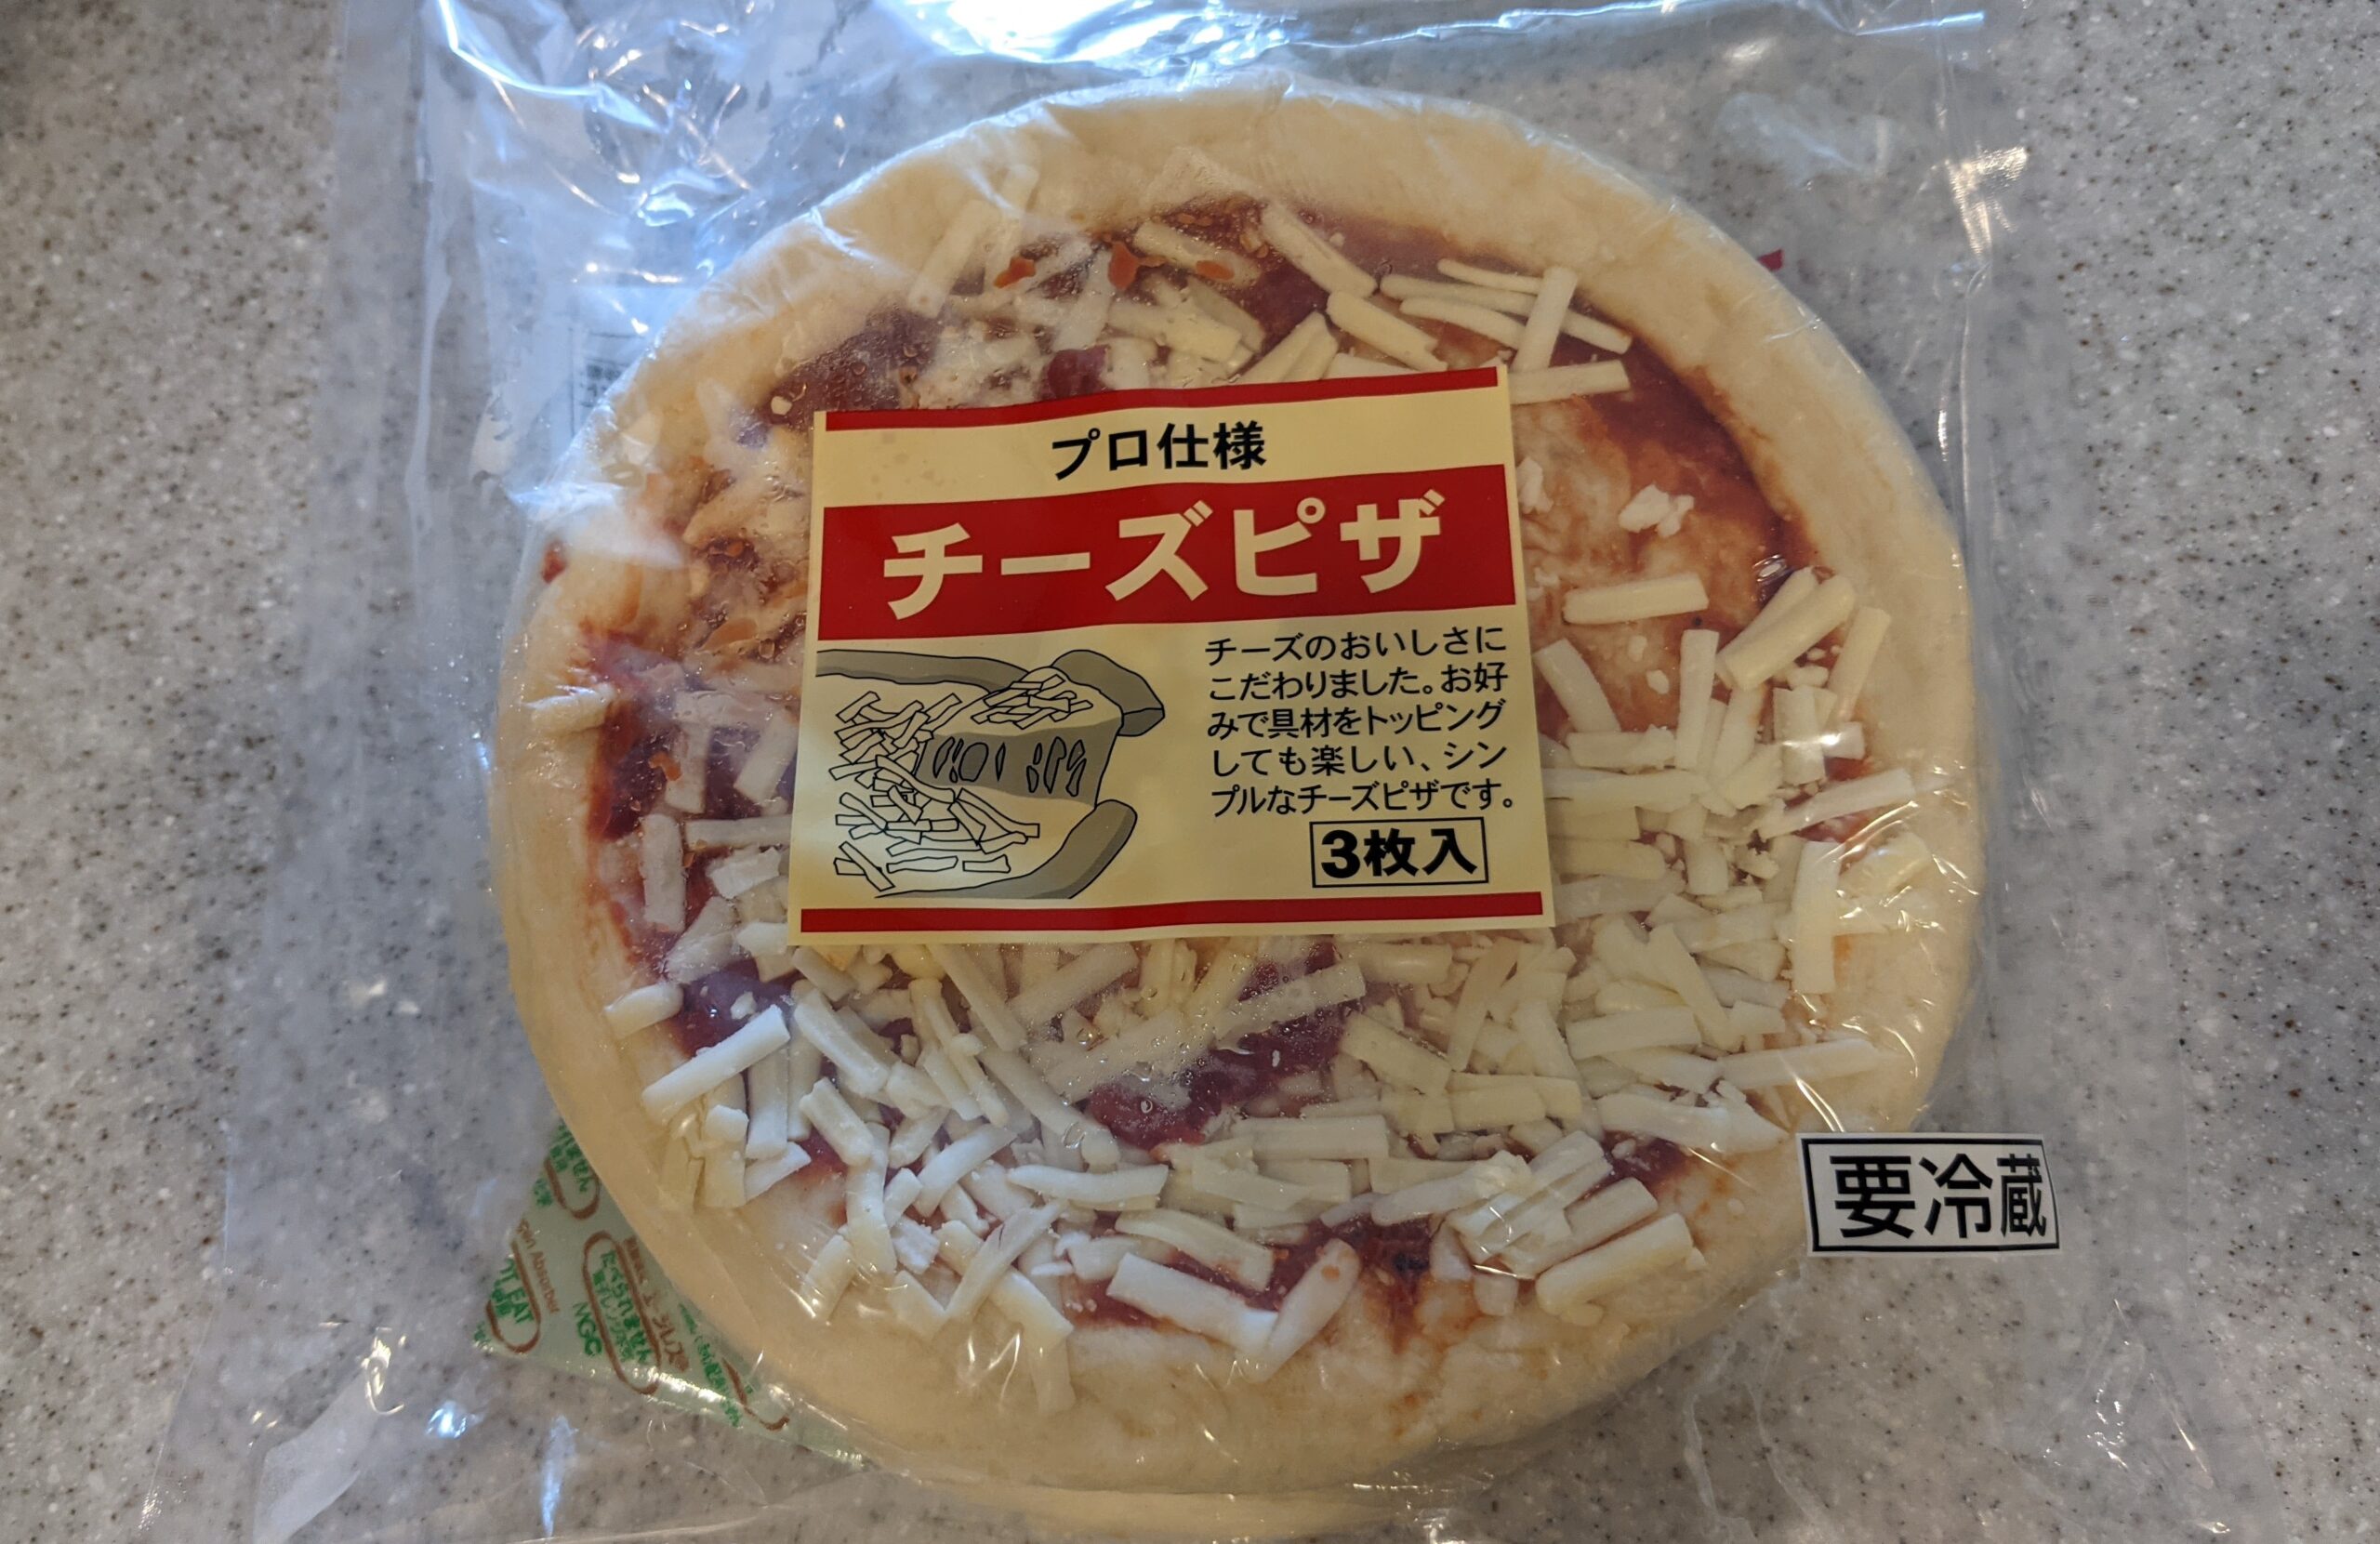 プロ仕様ブランドのチーズピザ